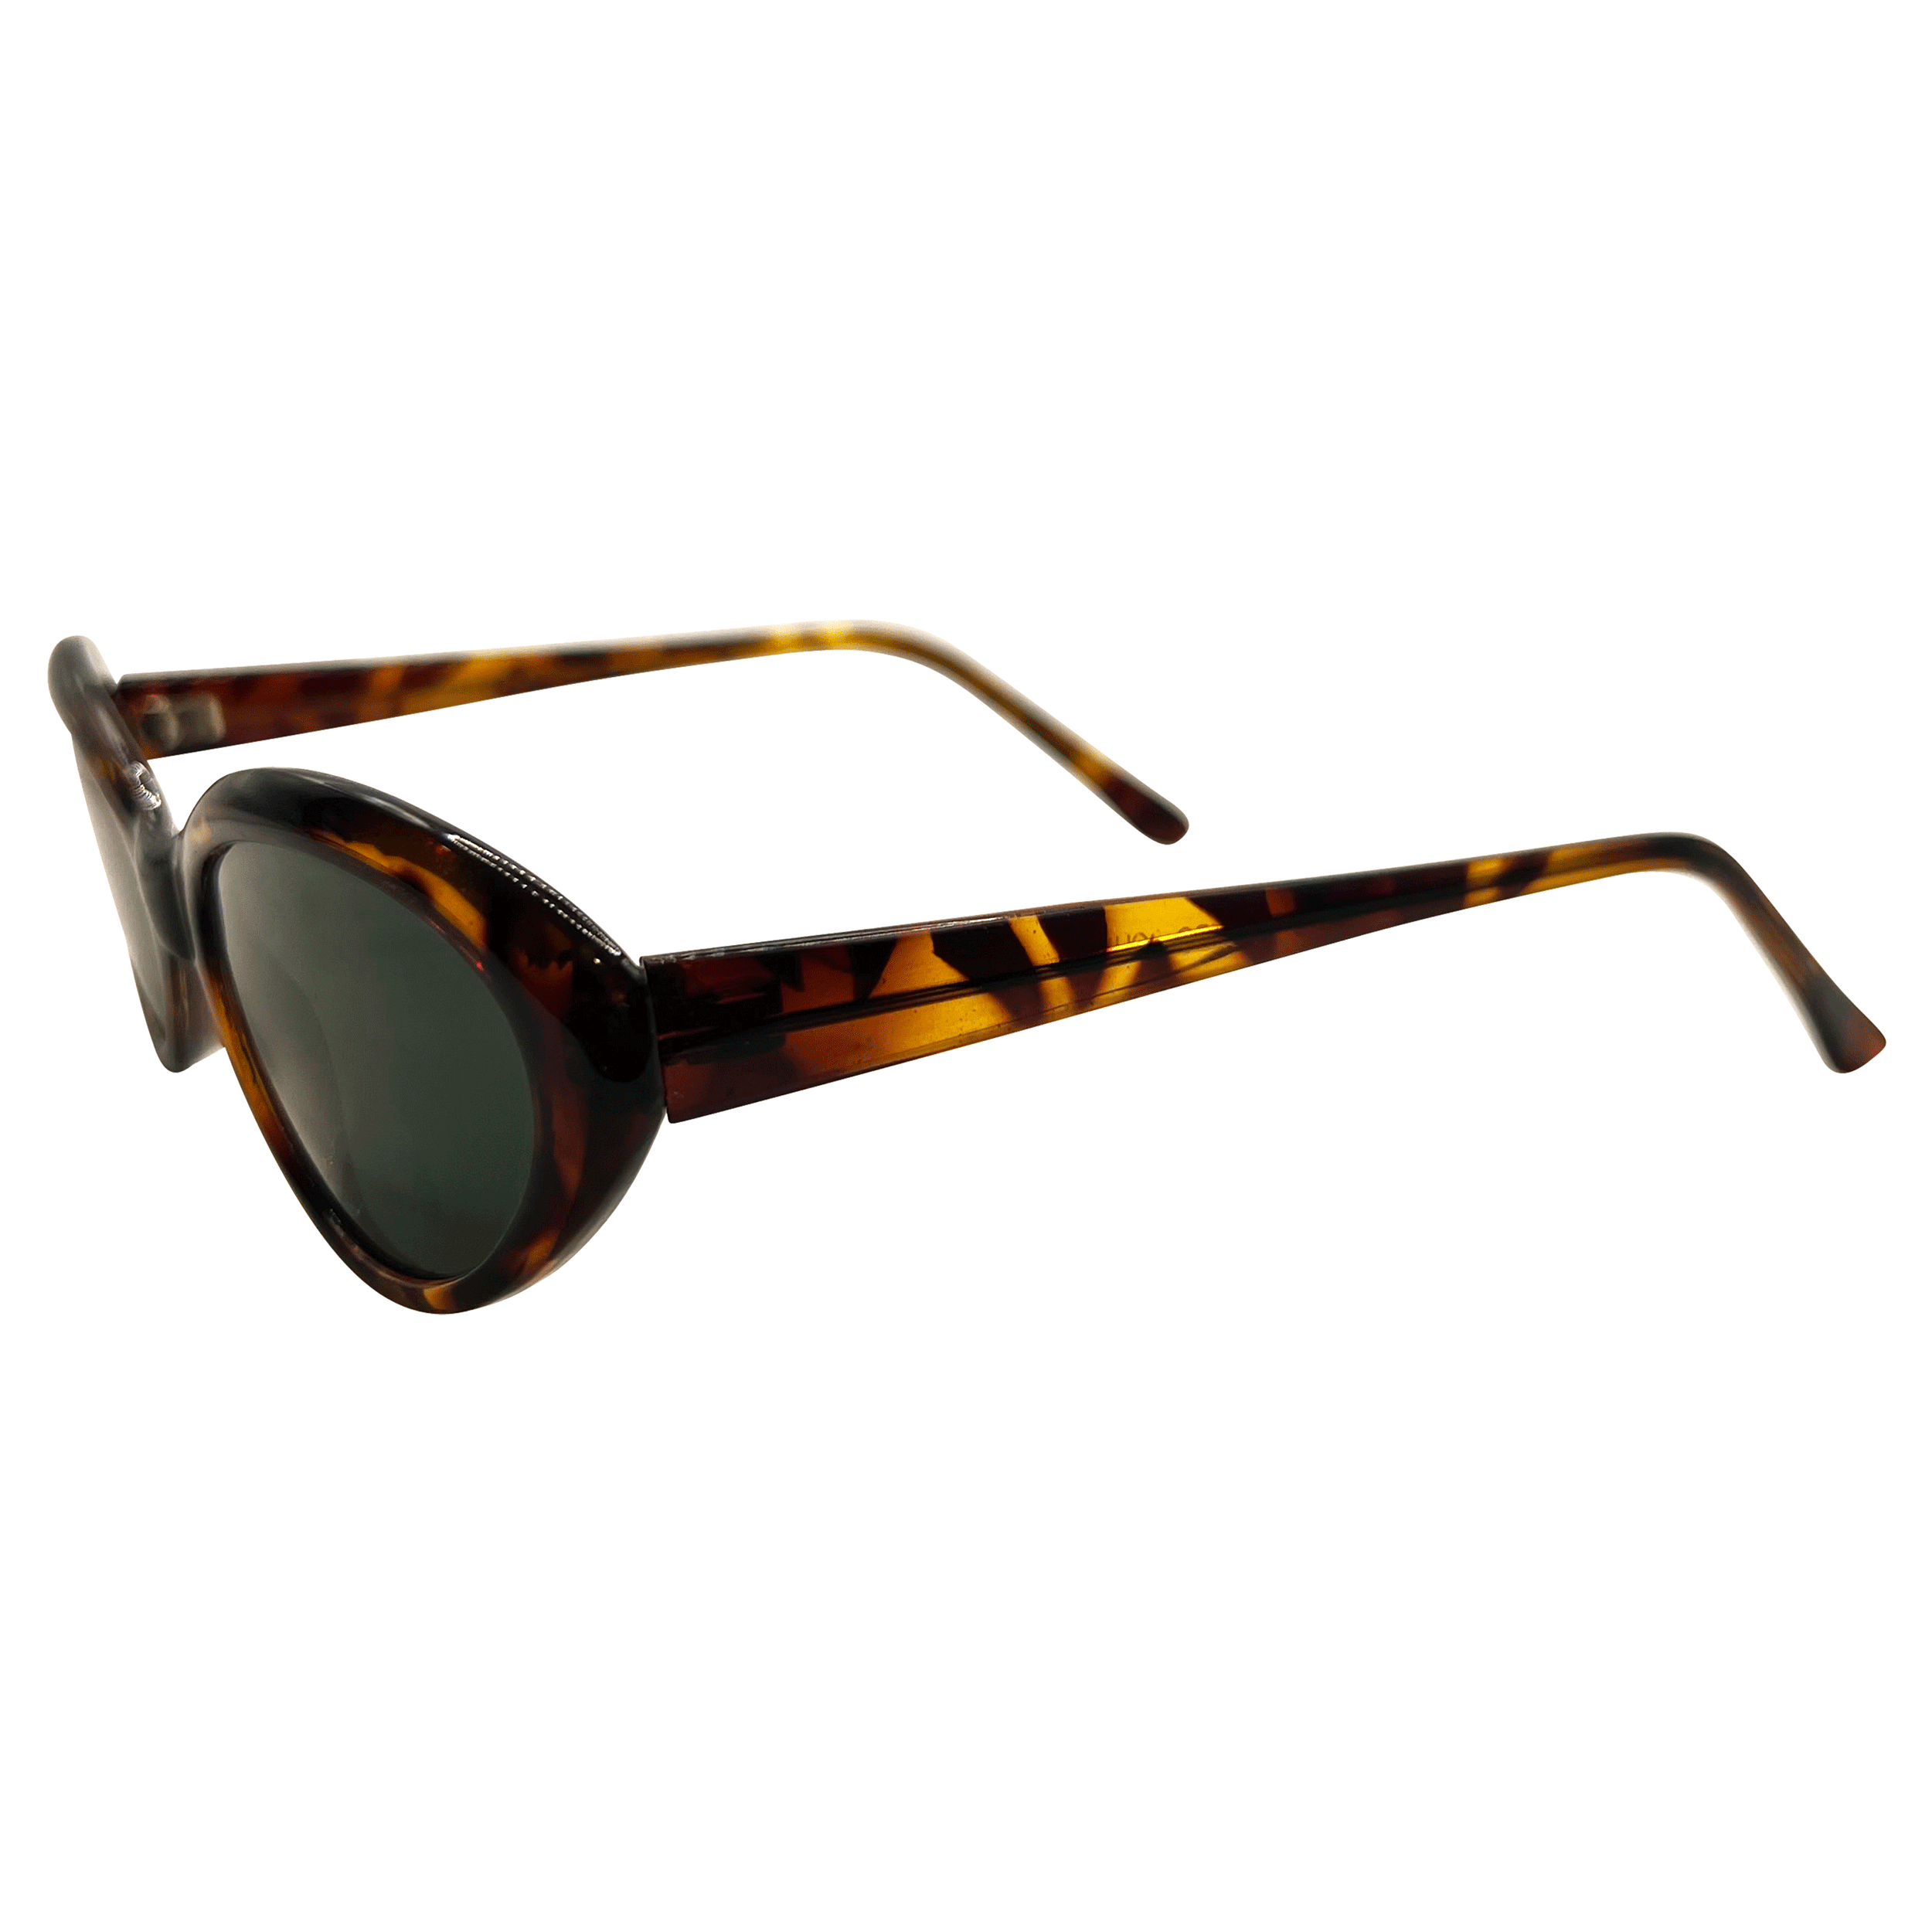 VIGIL Demi/Super Dark Classic Cat-Eye Sunglasses